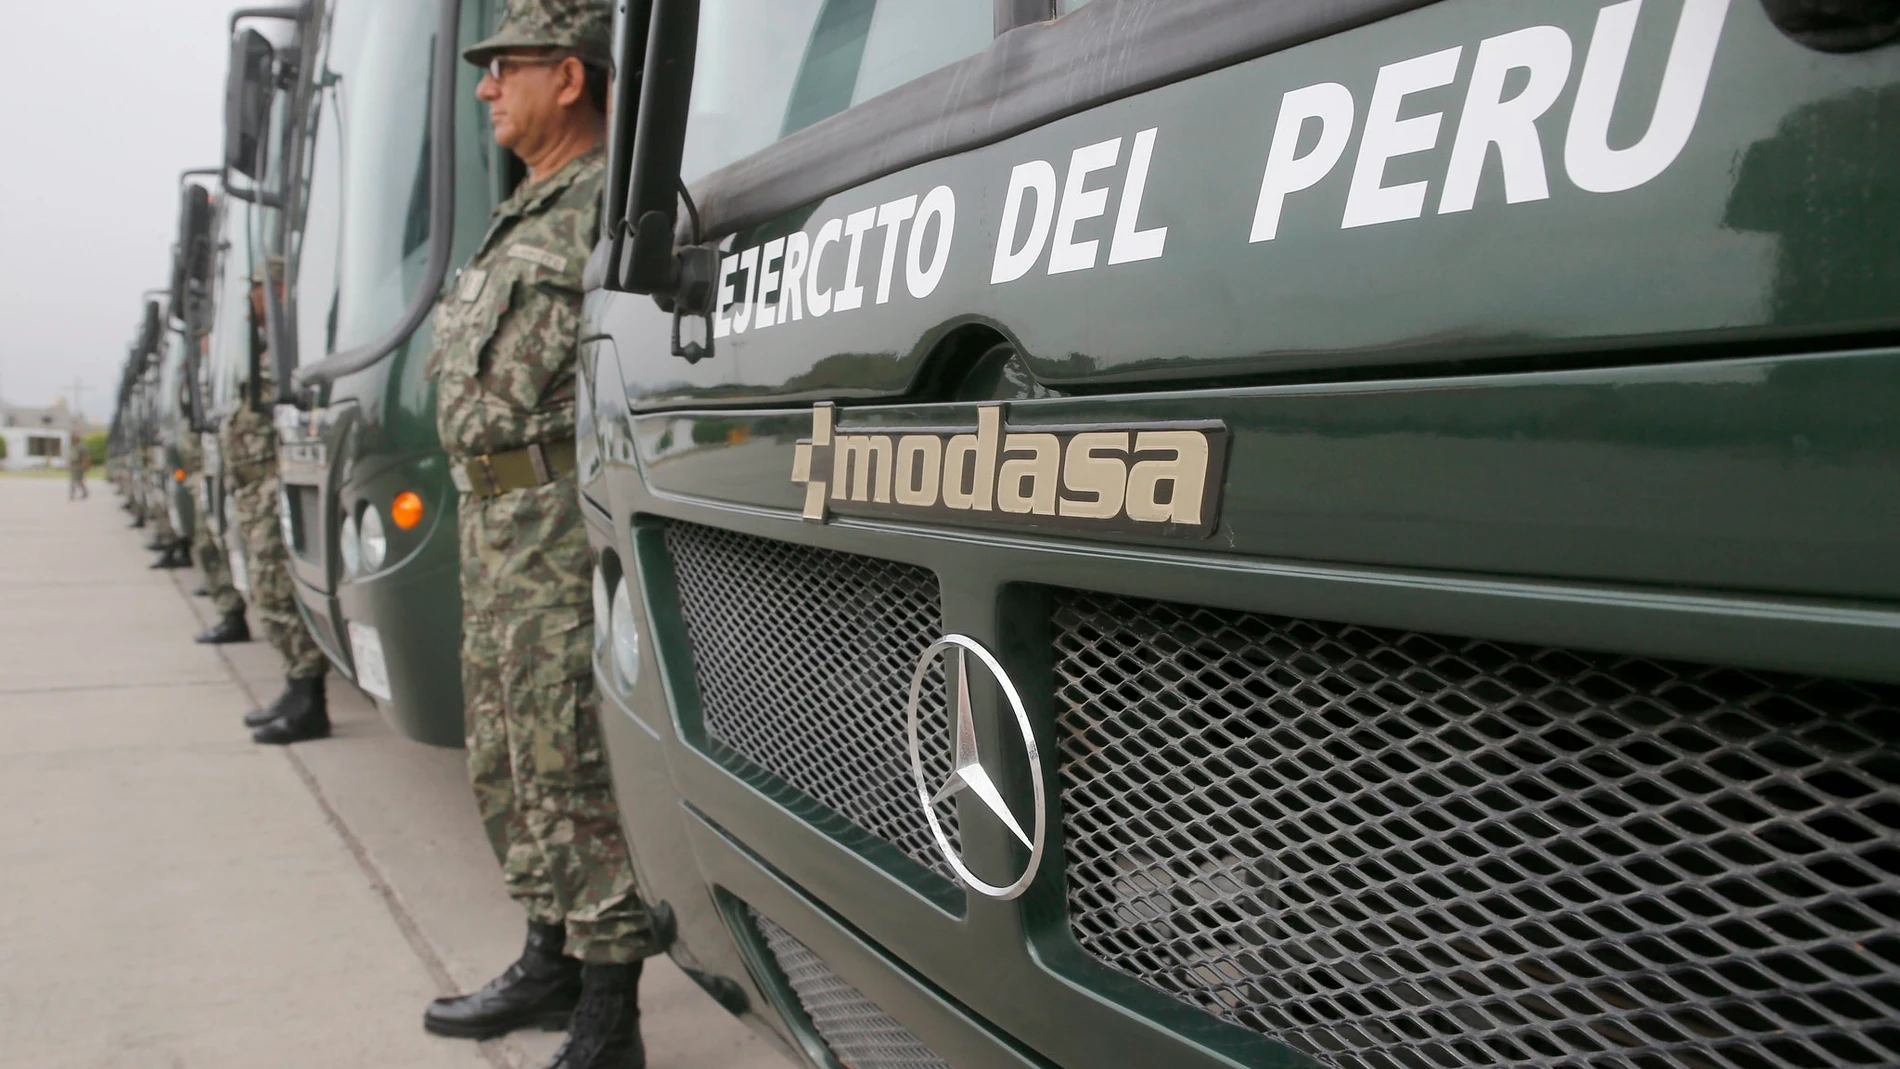 Perú.- Al menos cuatro militares de Perú muertos tras ser atacados durante un operativo antidroga en Ayacuccho